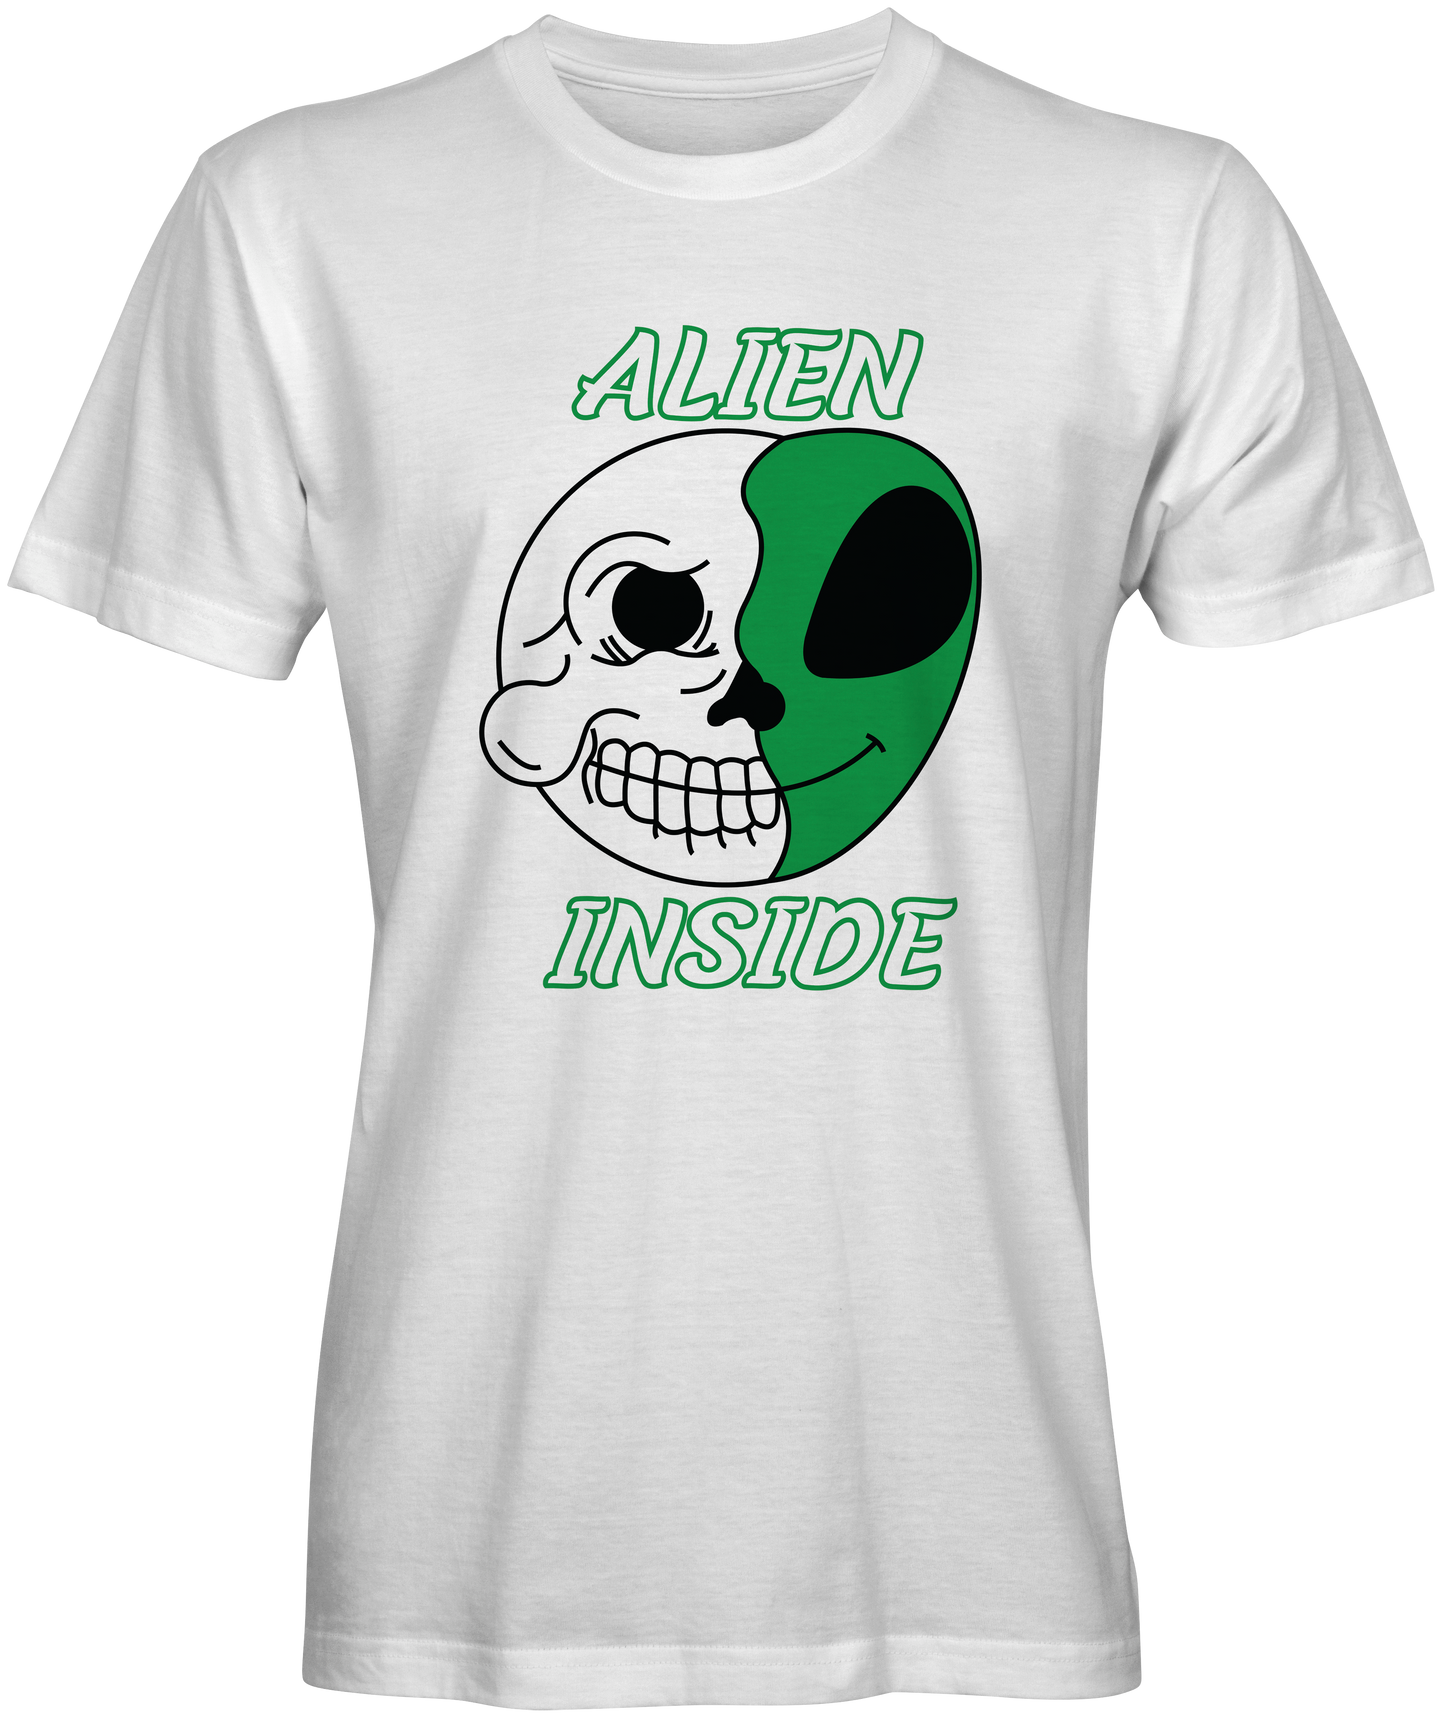 The Alien inside T-shirt for sale